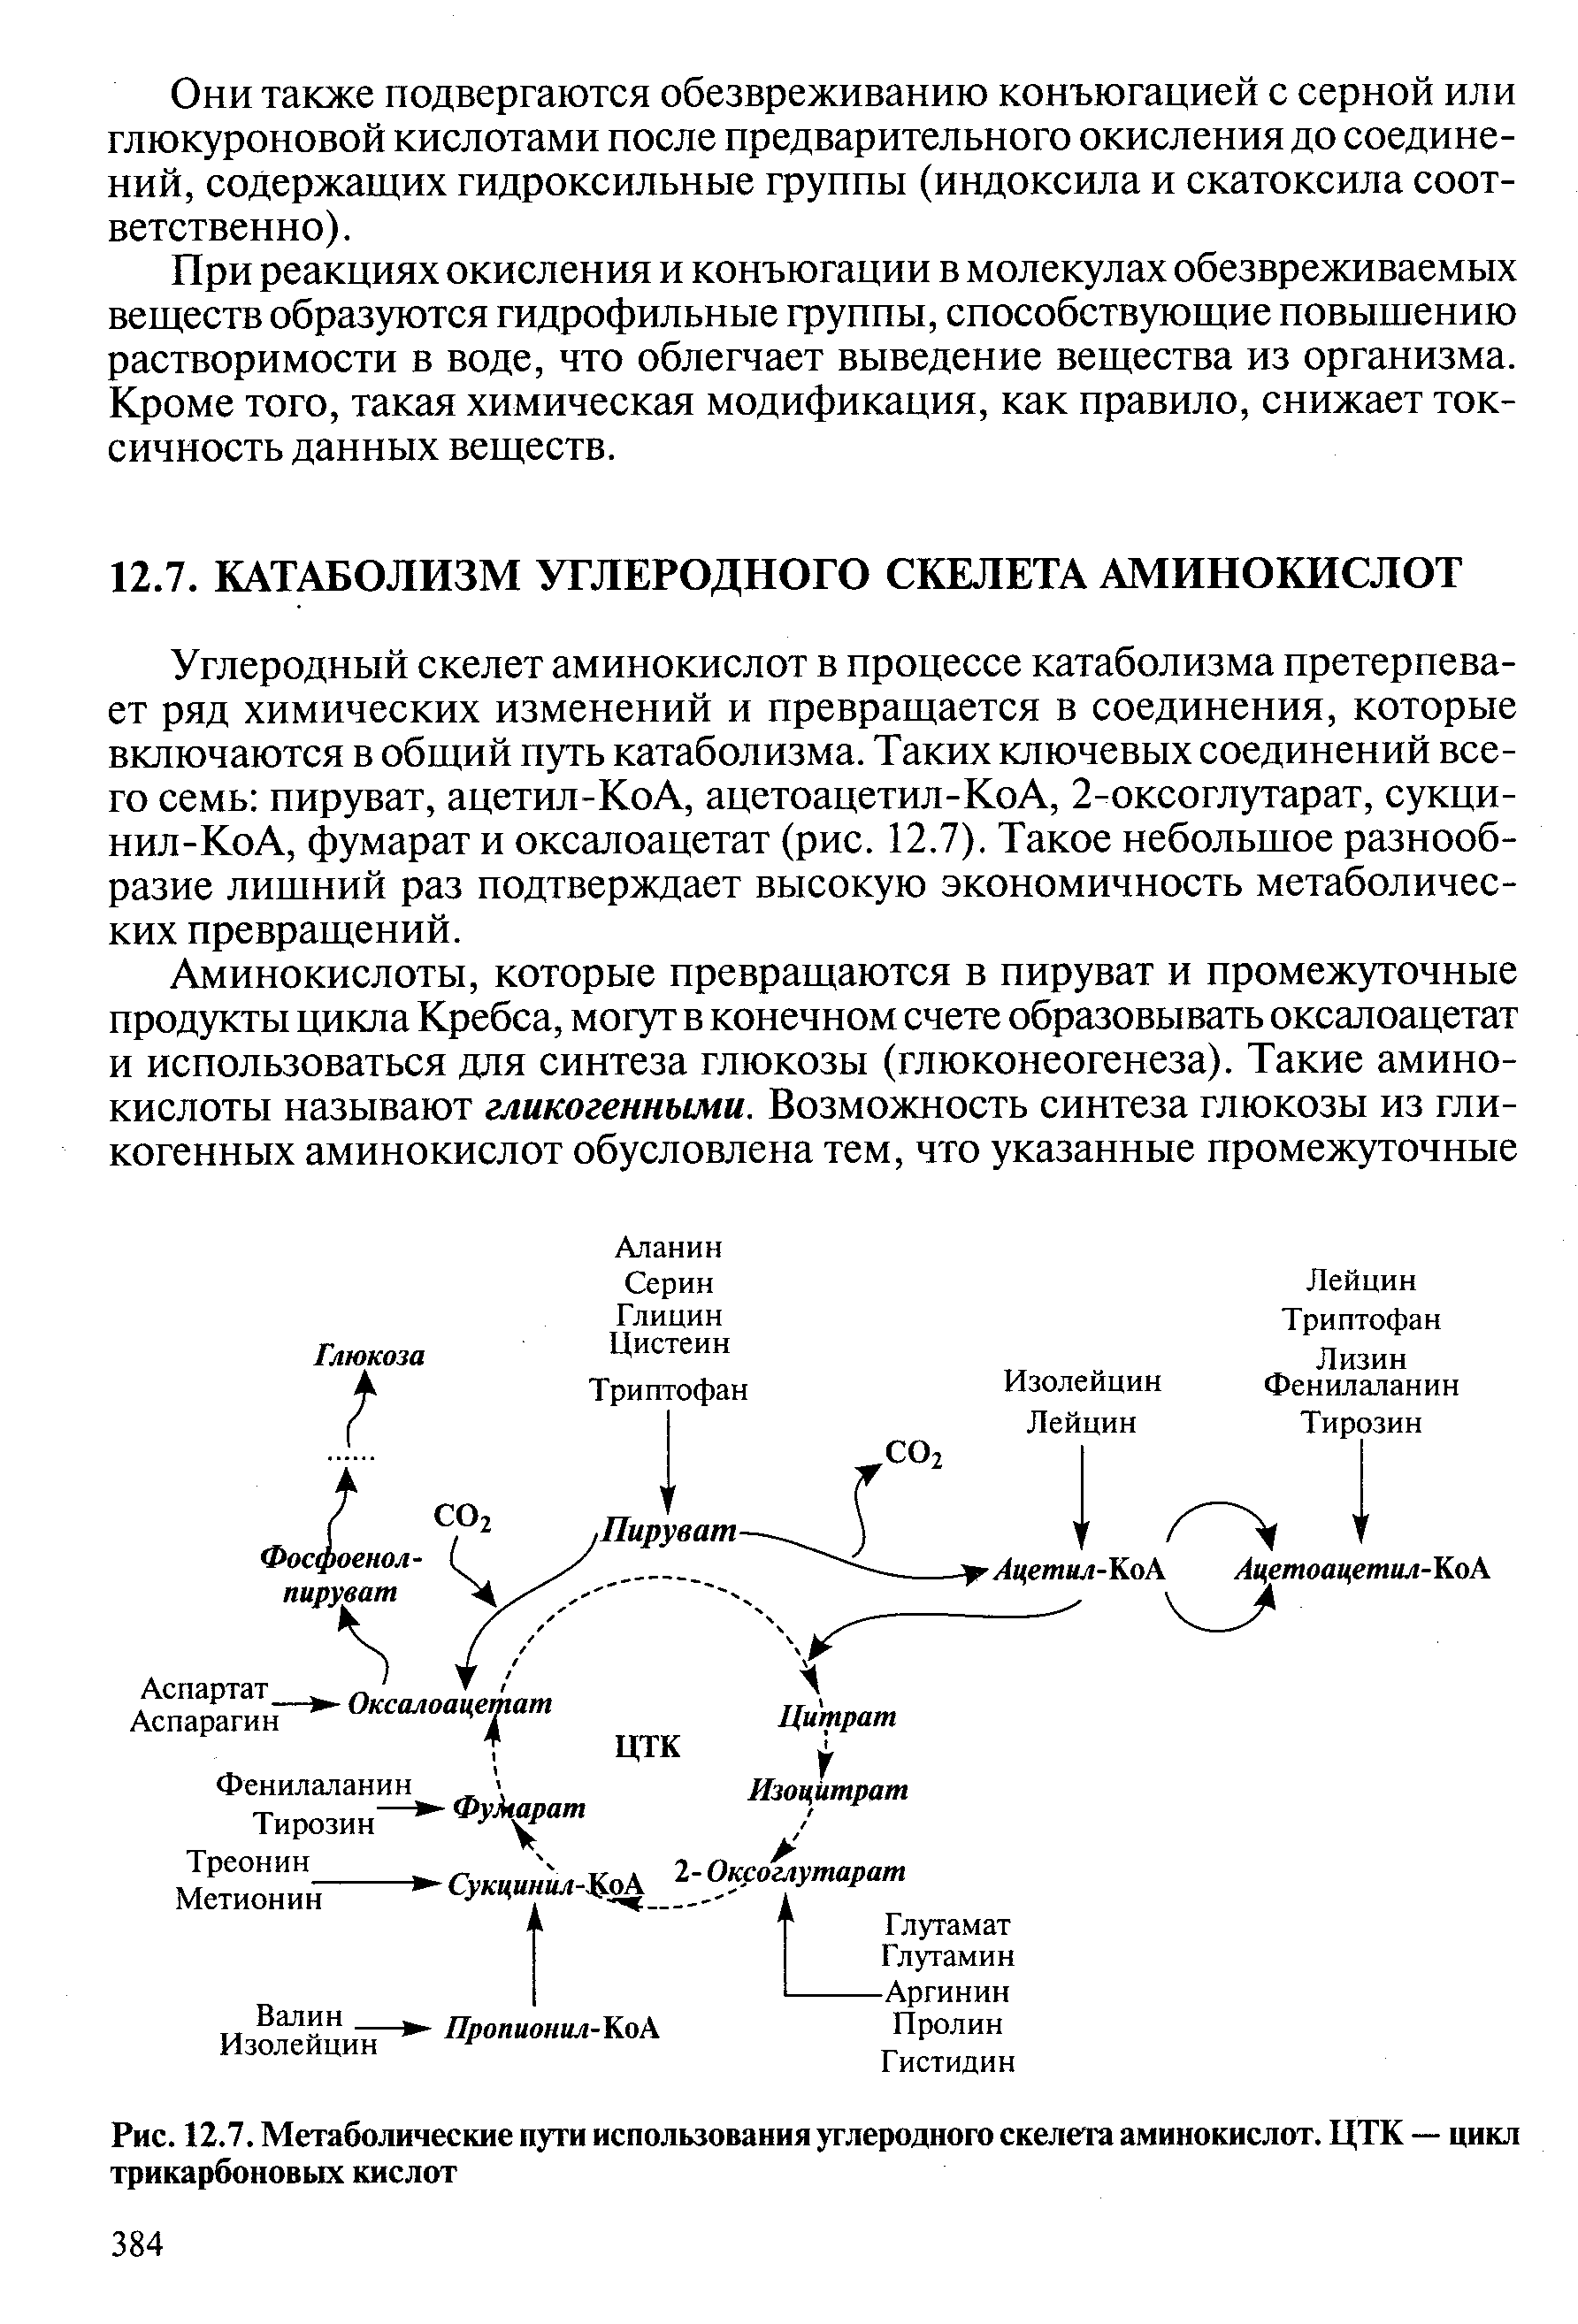 Углеродный скелет аминокислот в процессе катаболизма претерпевает ряд химических изменений и превращается в соединения, которые включаются в общий путь катаболизма. Таких ключевых соединений всего семь пируват, ацетил-КоА, ацетоацетил-КоА, 2-оксоглутарат, сукци-нил-КоА, фумарат и оксалоацетат (рис. 12.7). Такое небольшое разнообразие лишний раз подтверждает высокую экономичность метаболических превращений.